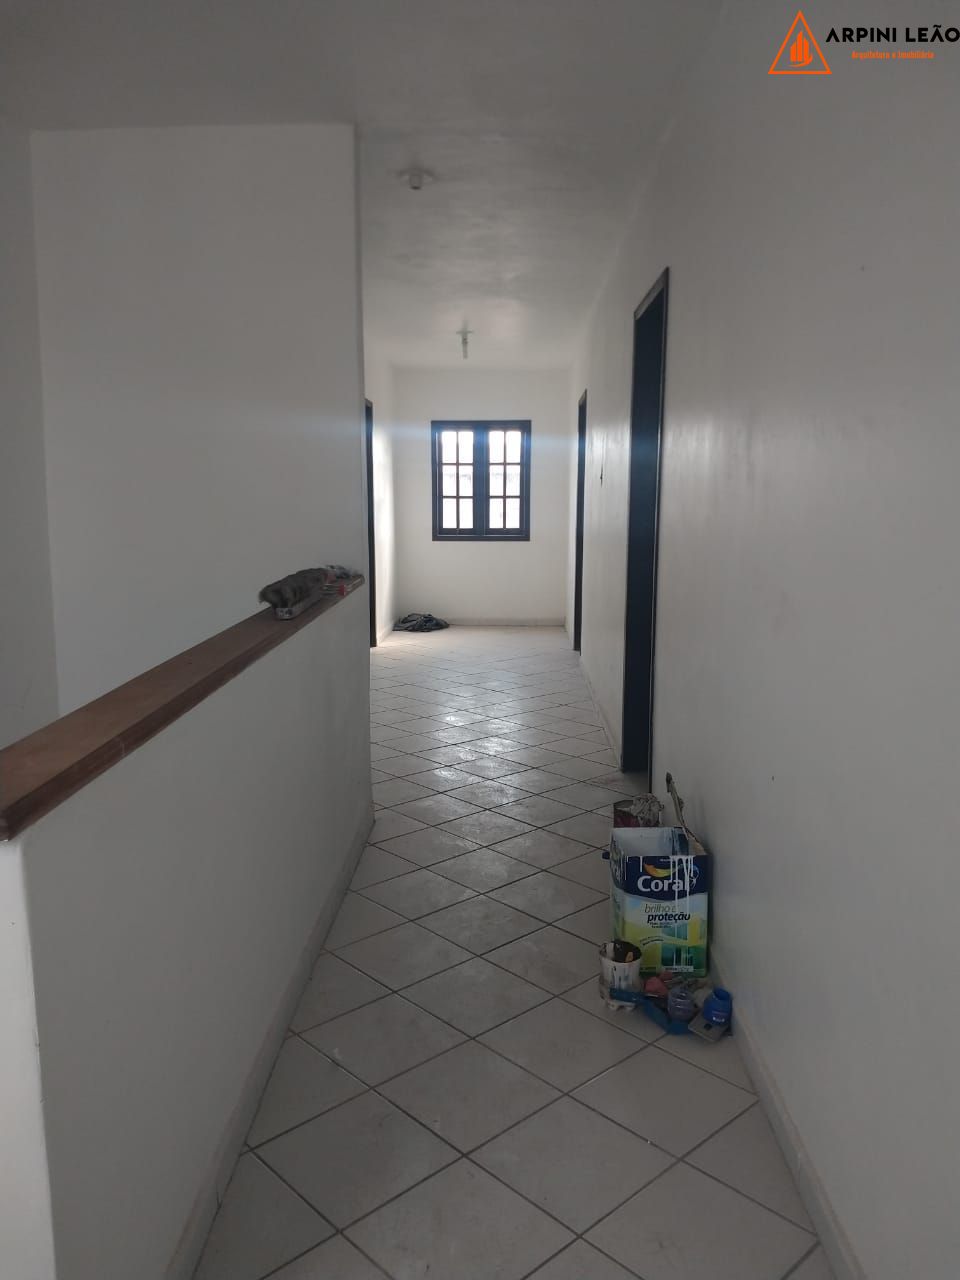 Apartamento com 1 Dormitórios à venda, 42 m² por R$ 95.000,00